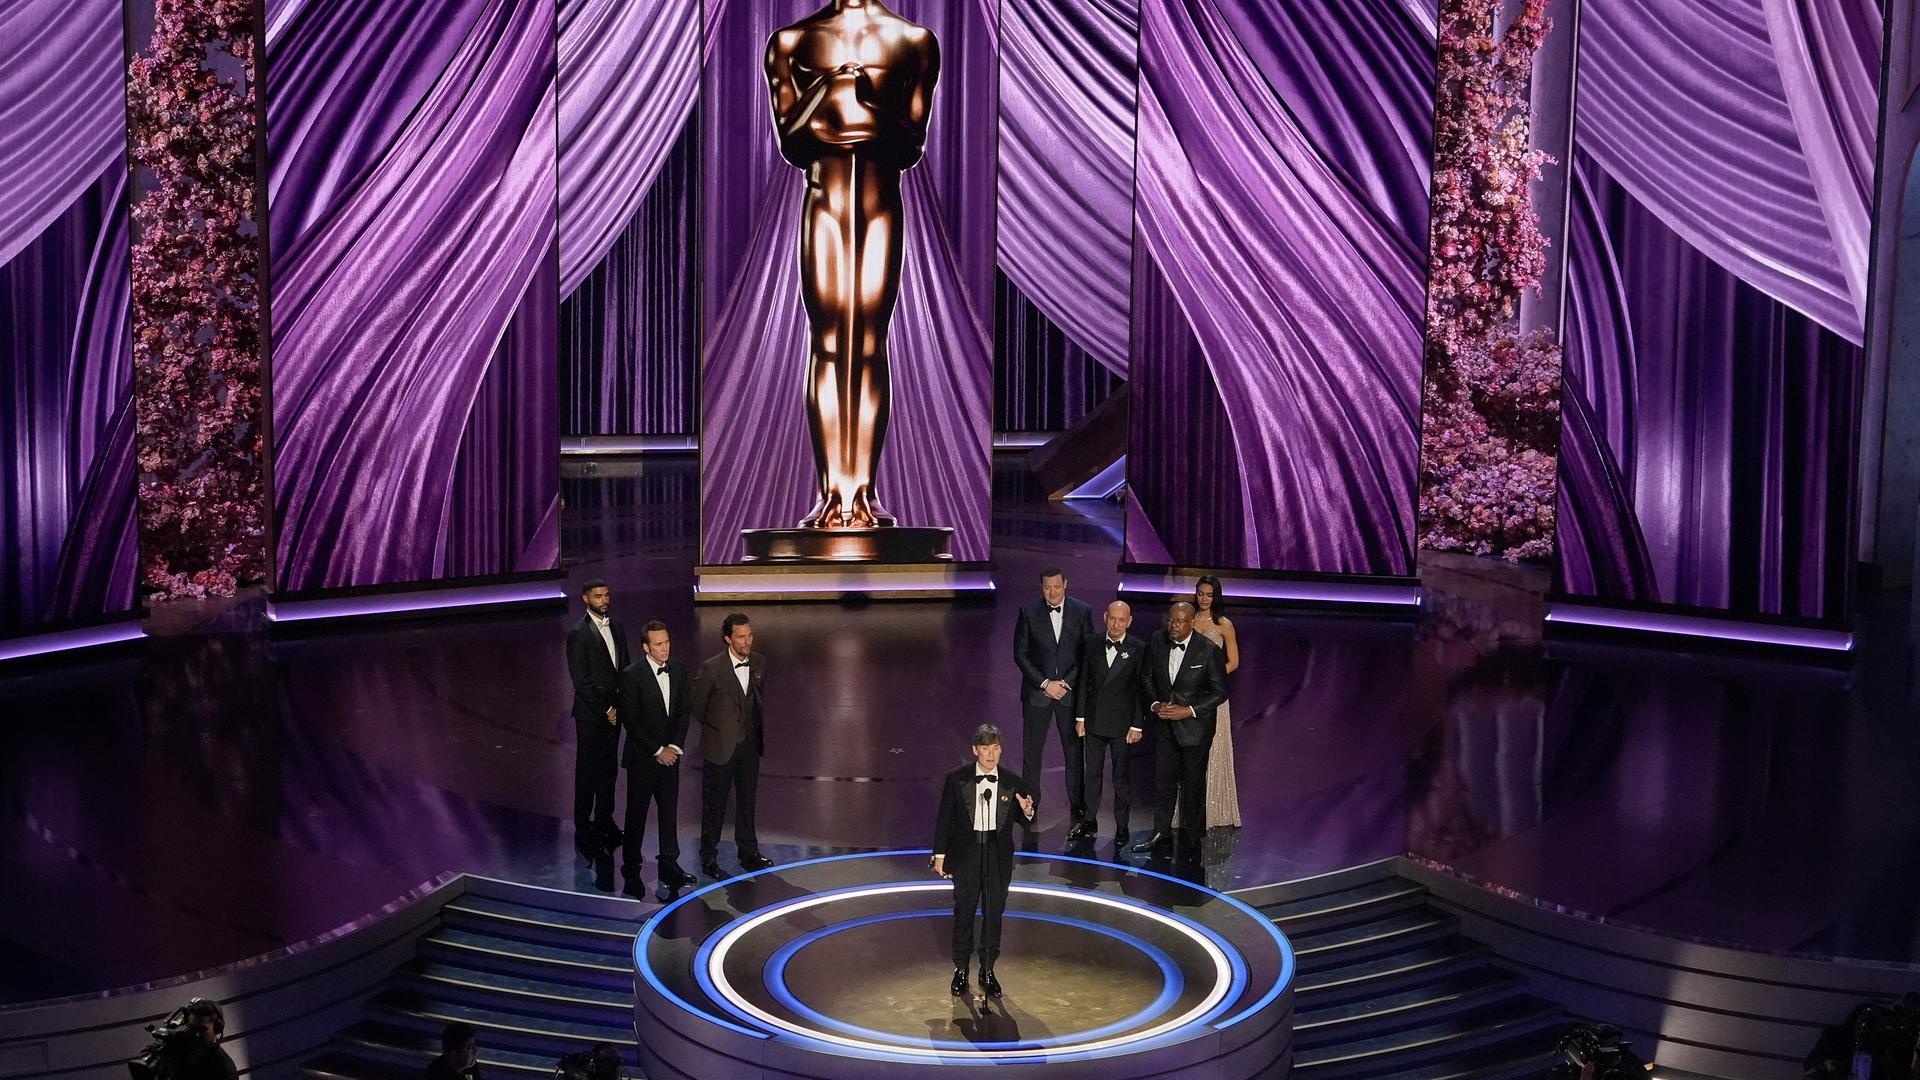 Nicolas Cage (von links), Matthew McConaughey, Brendan Fraser, Ben Kingsley und Forest Whitaker sehen zu, wie Cillian Murphy (Mitte) den Preis für die beste Leistung eines Hauptdarstellers für "Oppenheimer" während der Oscar-Verleihung entgegennimmt.